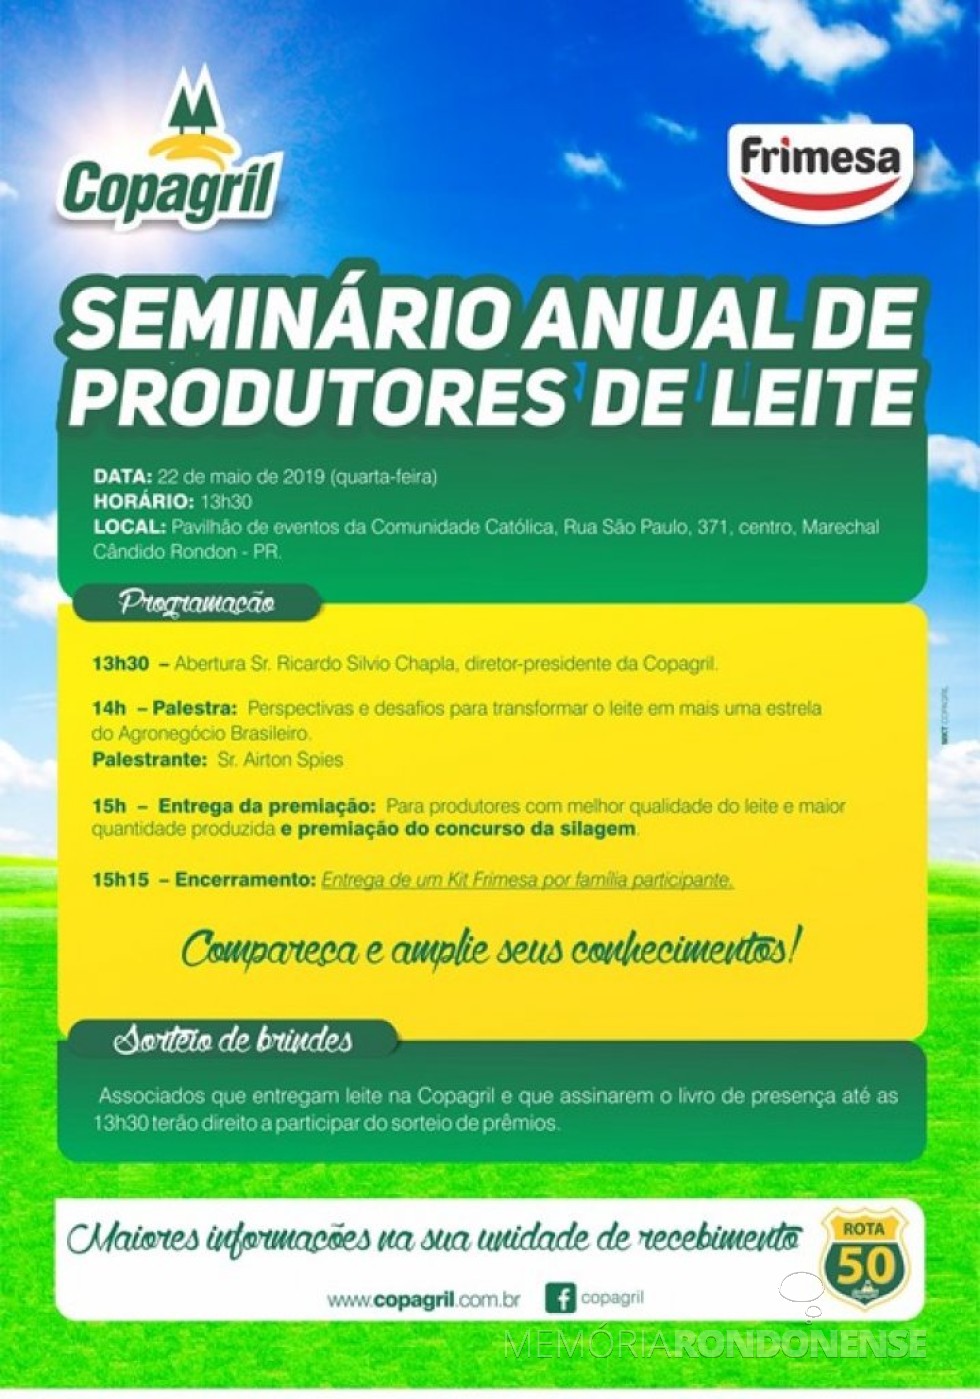 Convite da Copagril para o Seminário de Produtores de Leite 2019. 
Imagem: Acervo Comunicação Copagril - FOTO 14 - 